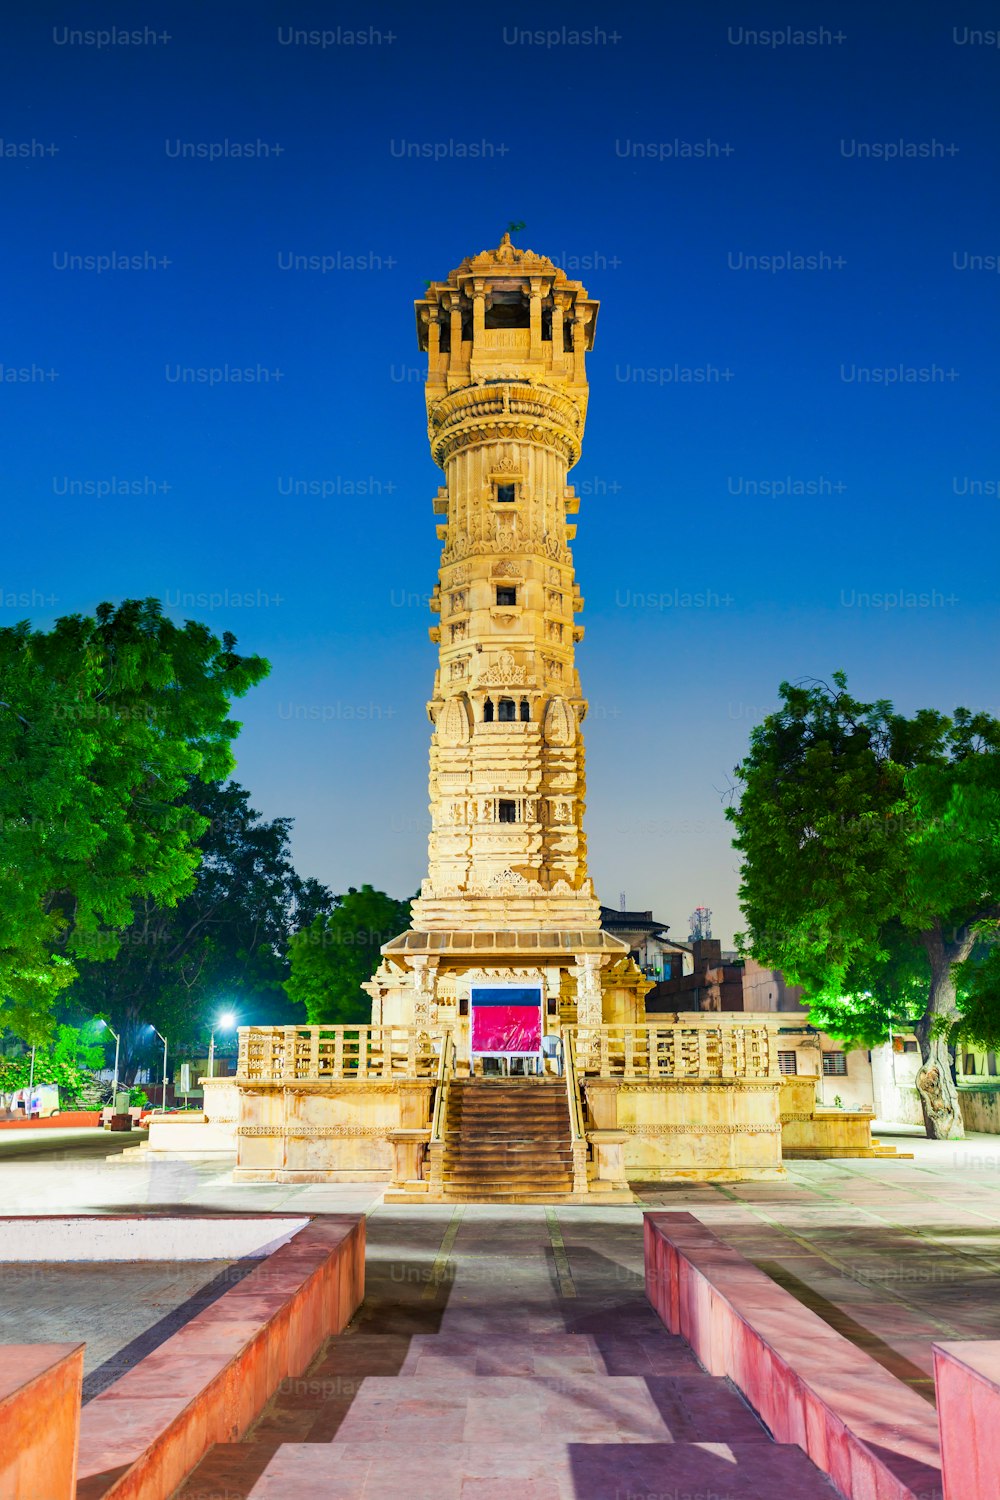 Kirti Stambh Tower presso il Tempio di Hutheesing, il più noto tempio giainista nella città di Ahmedabad, nello stato indiano del Gujarat